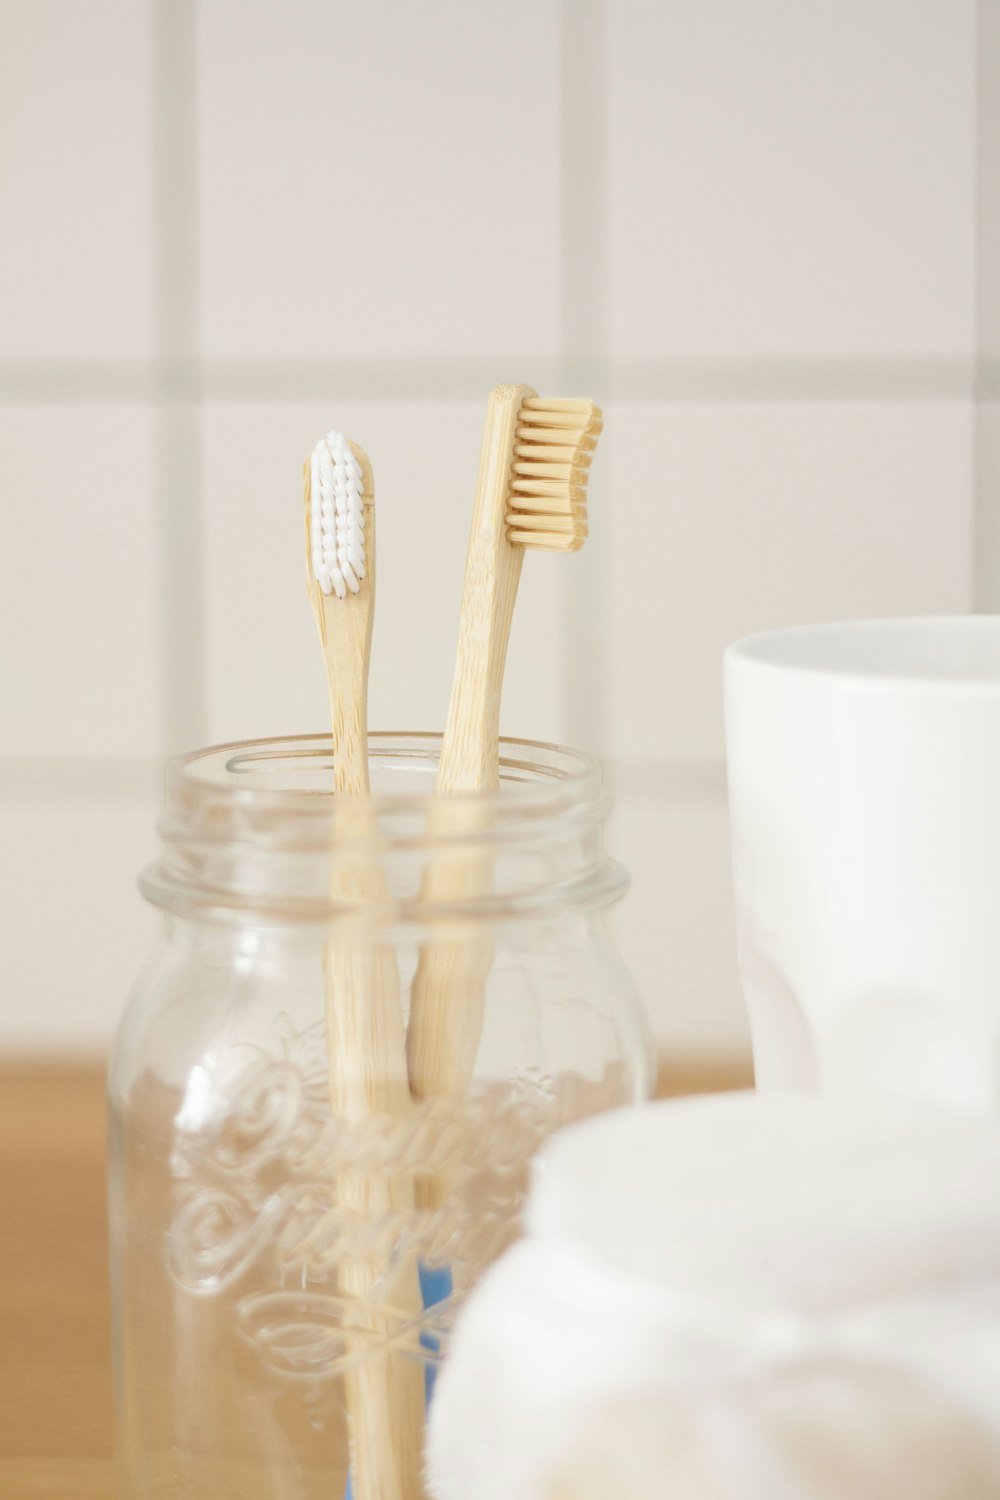 due spazzolini da denti in legno marrone